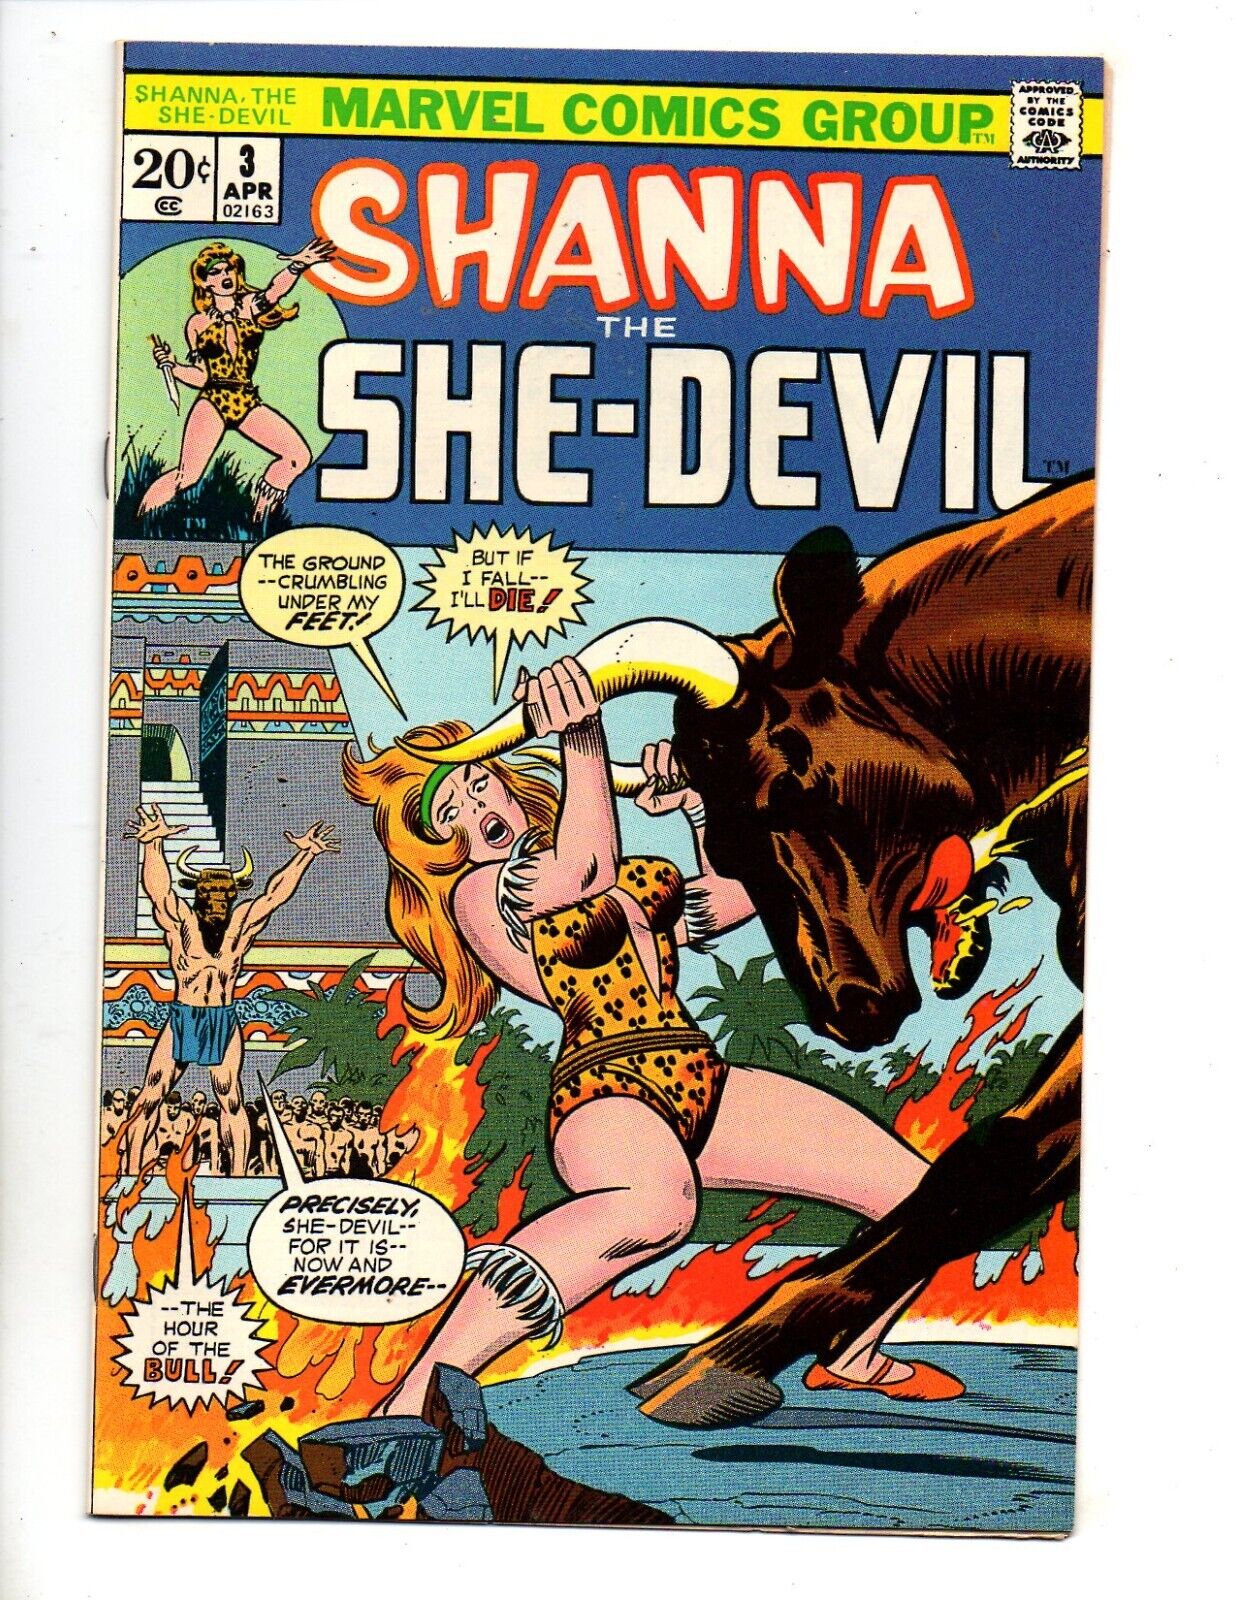 SHANNA THE SHE-DEVIL #3  VF+ 8.5  "THE MOON OF THE FEAR-BULLS"